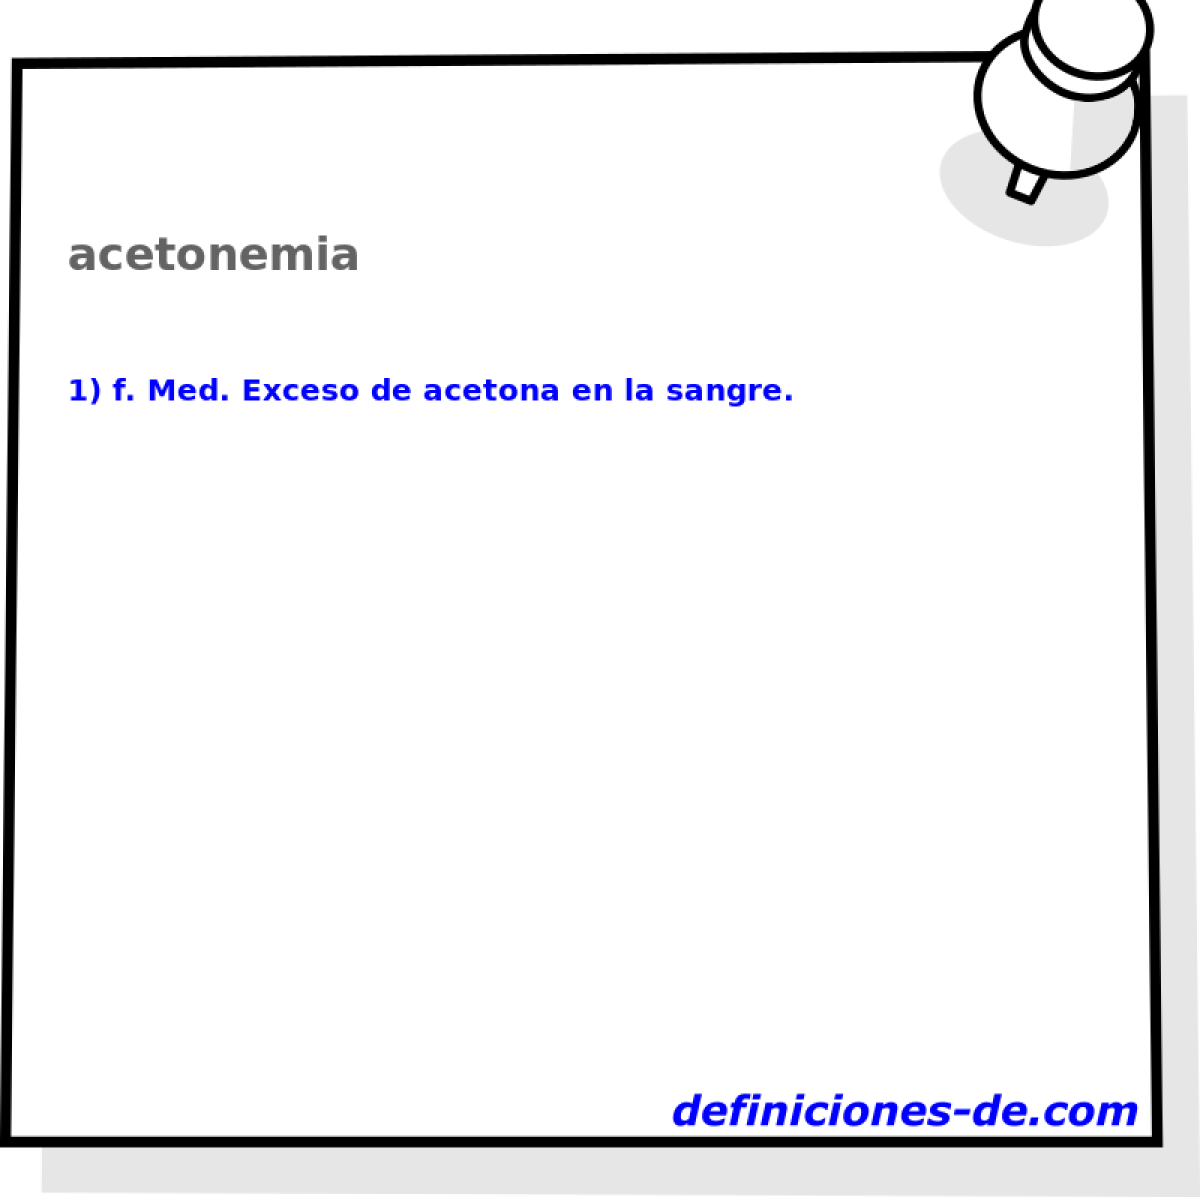 acetonemia 